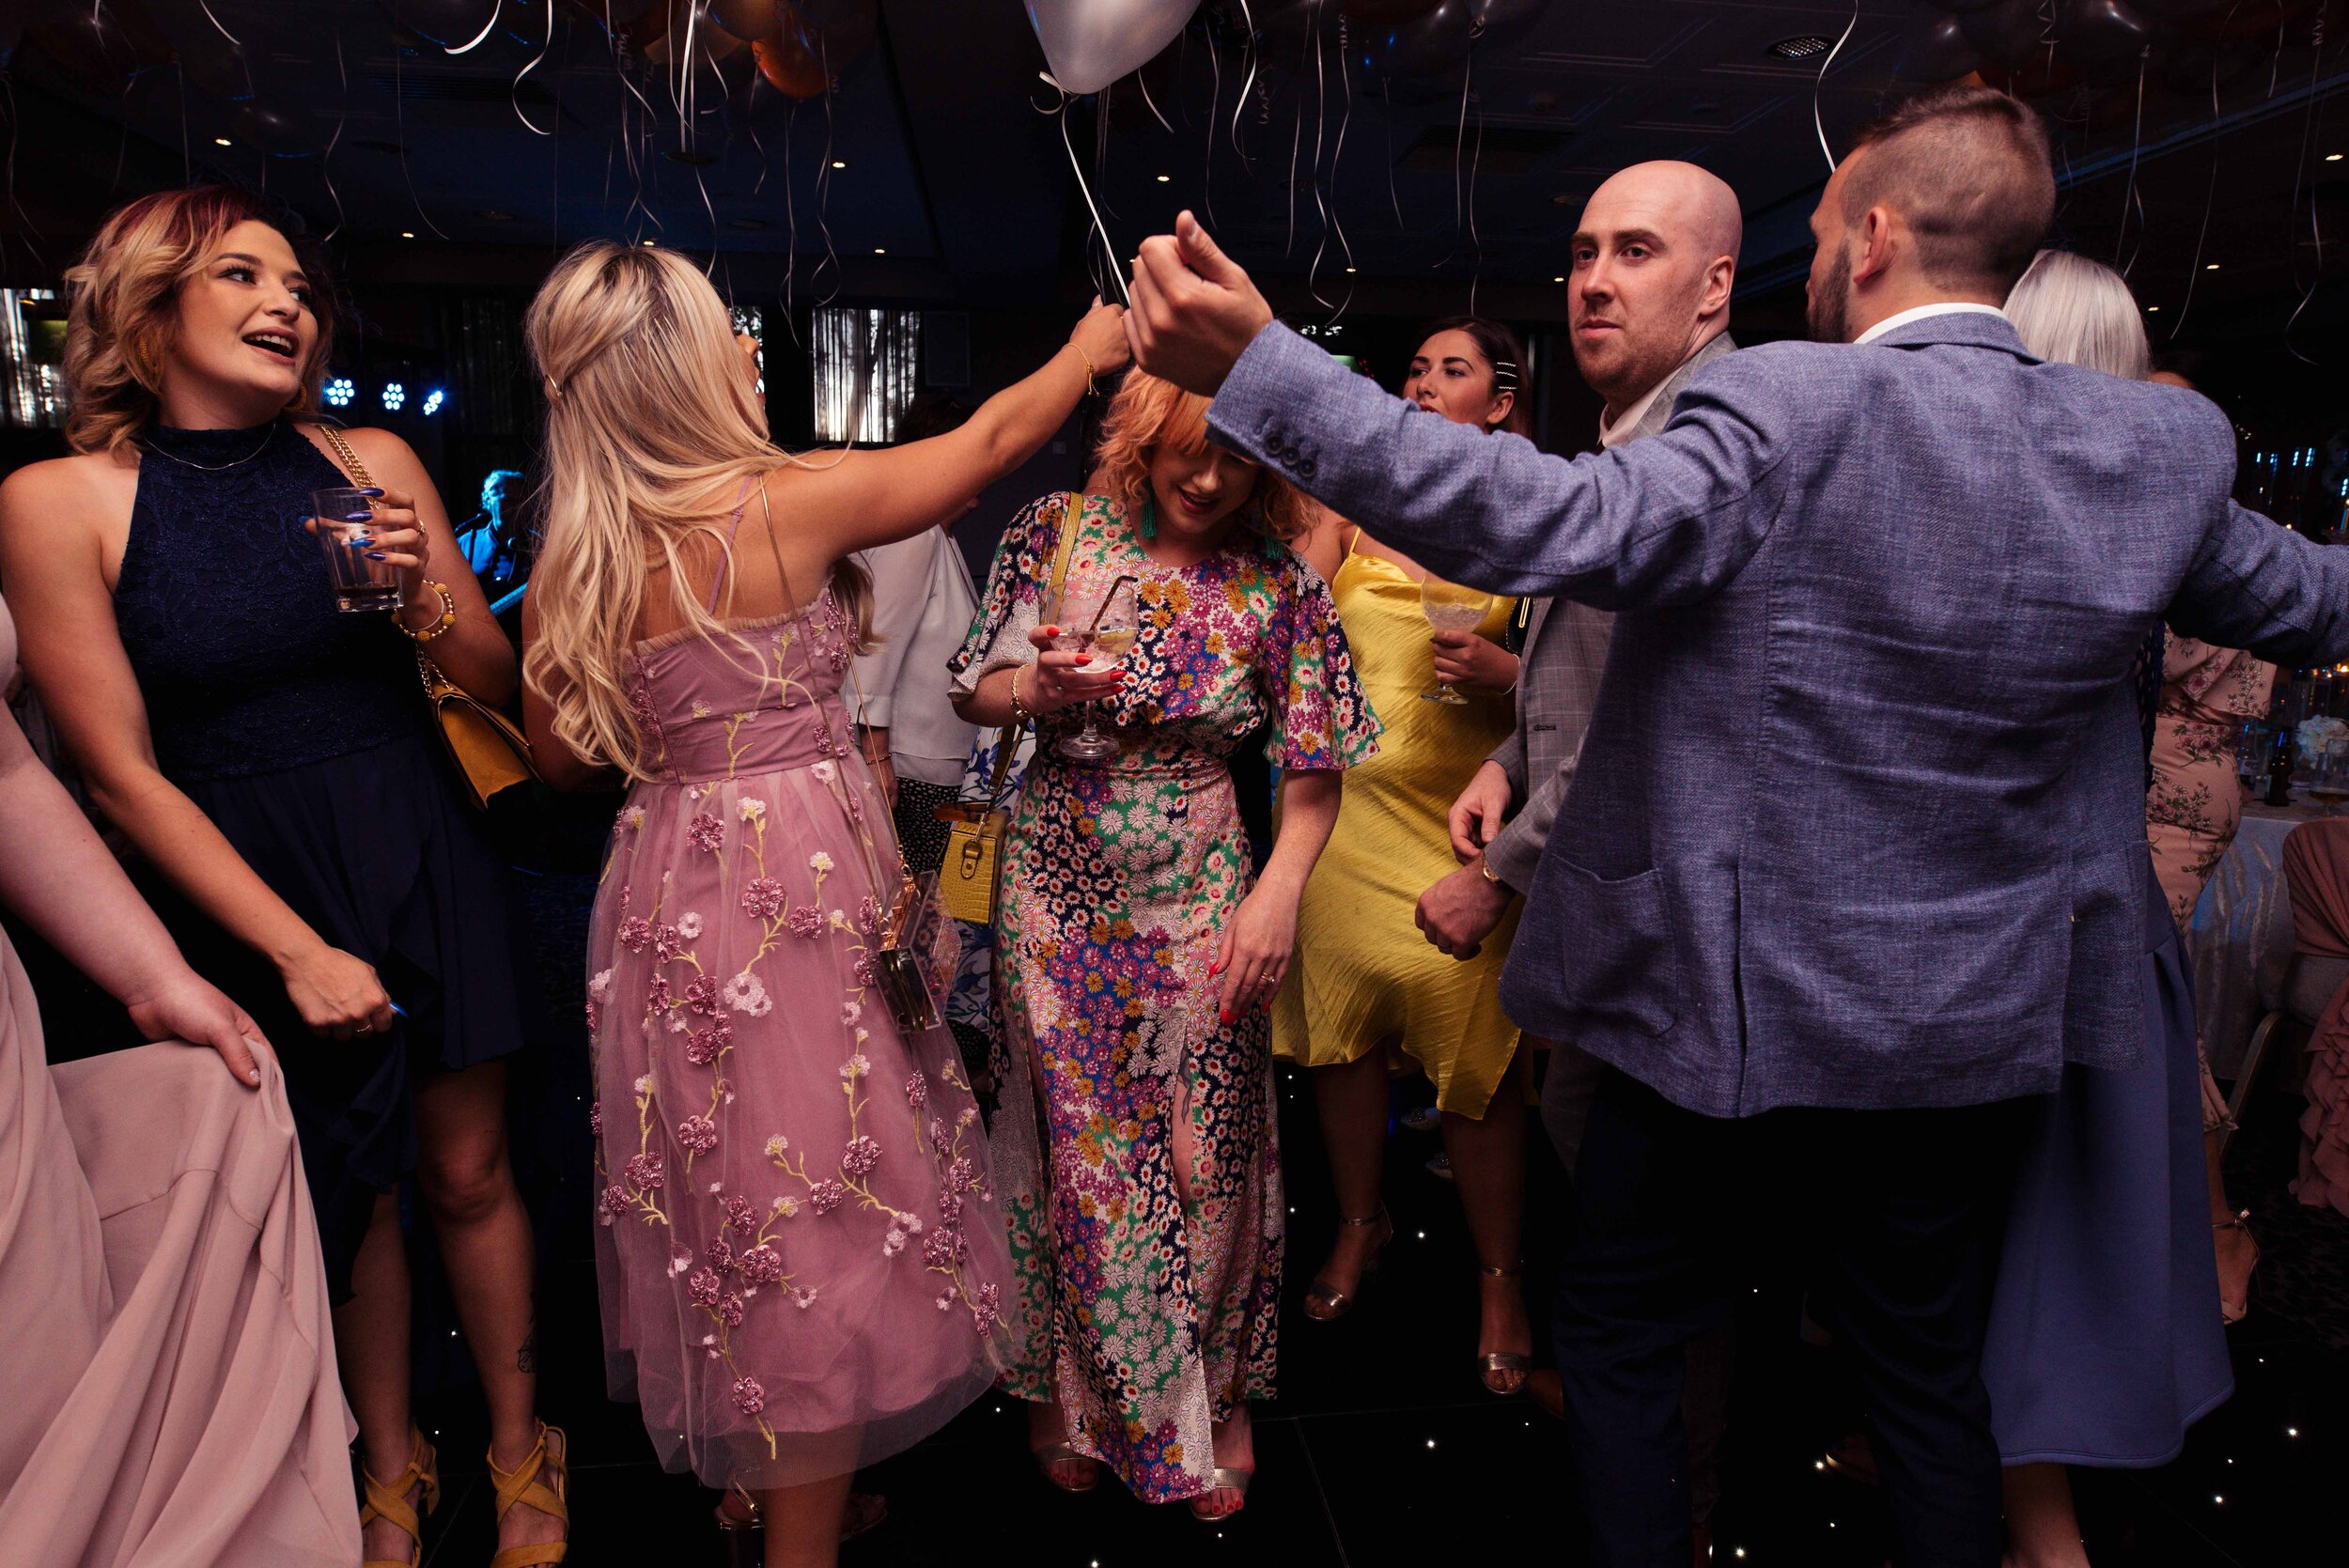 Guests go wild on the dance floor